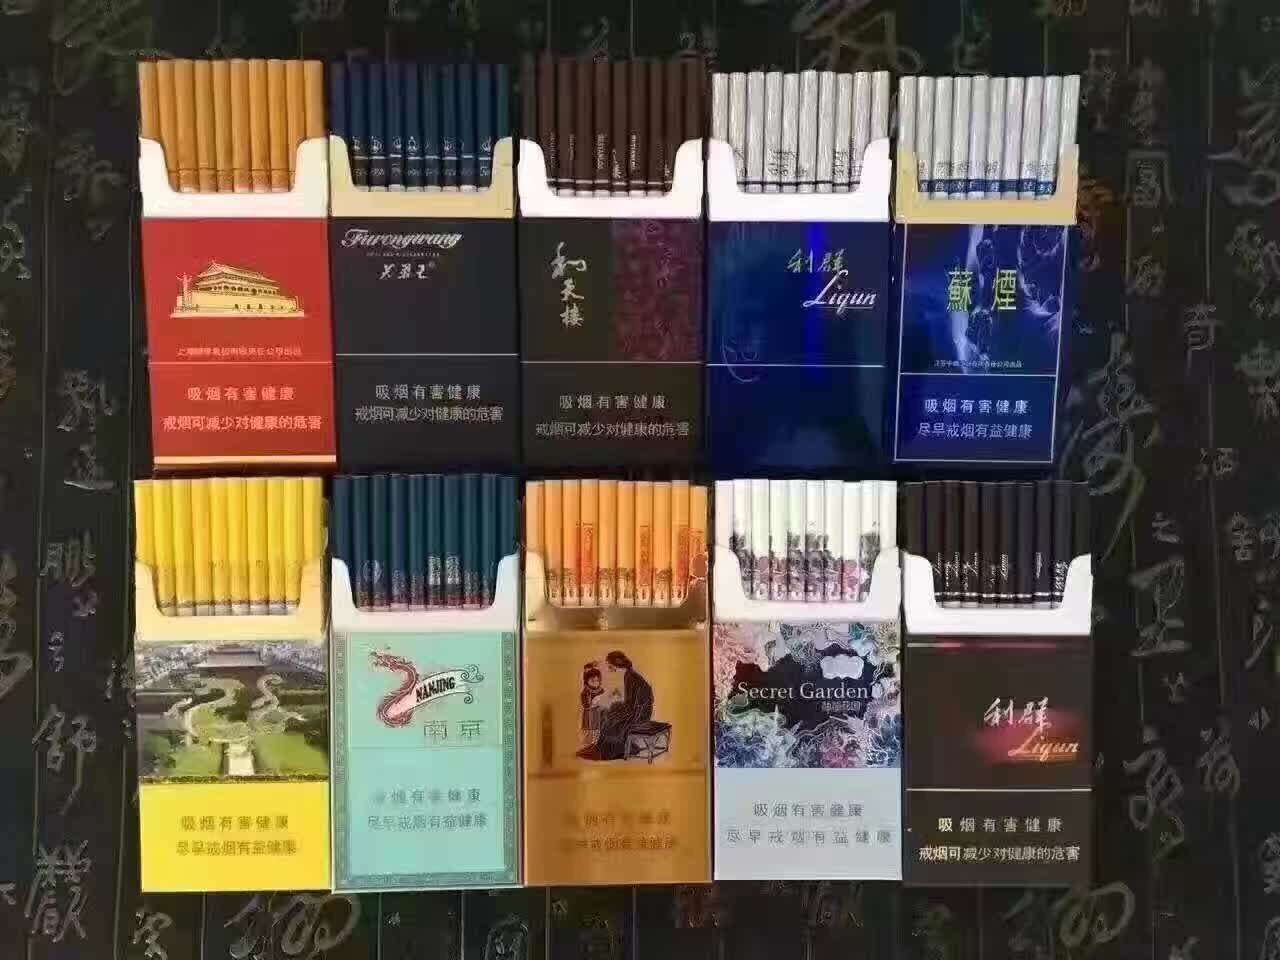 越南香烟批发网站 广西香烟网购平台 广西防城港香烟批发